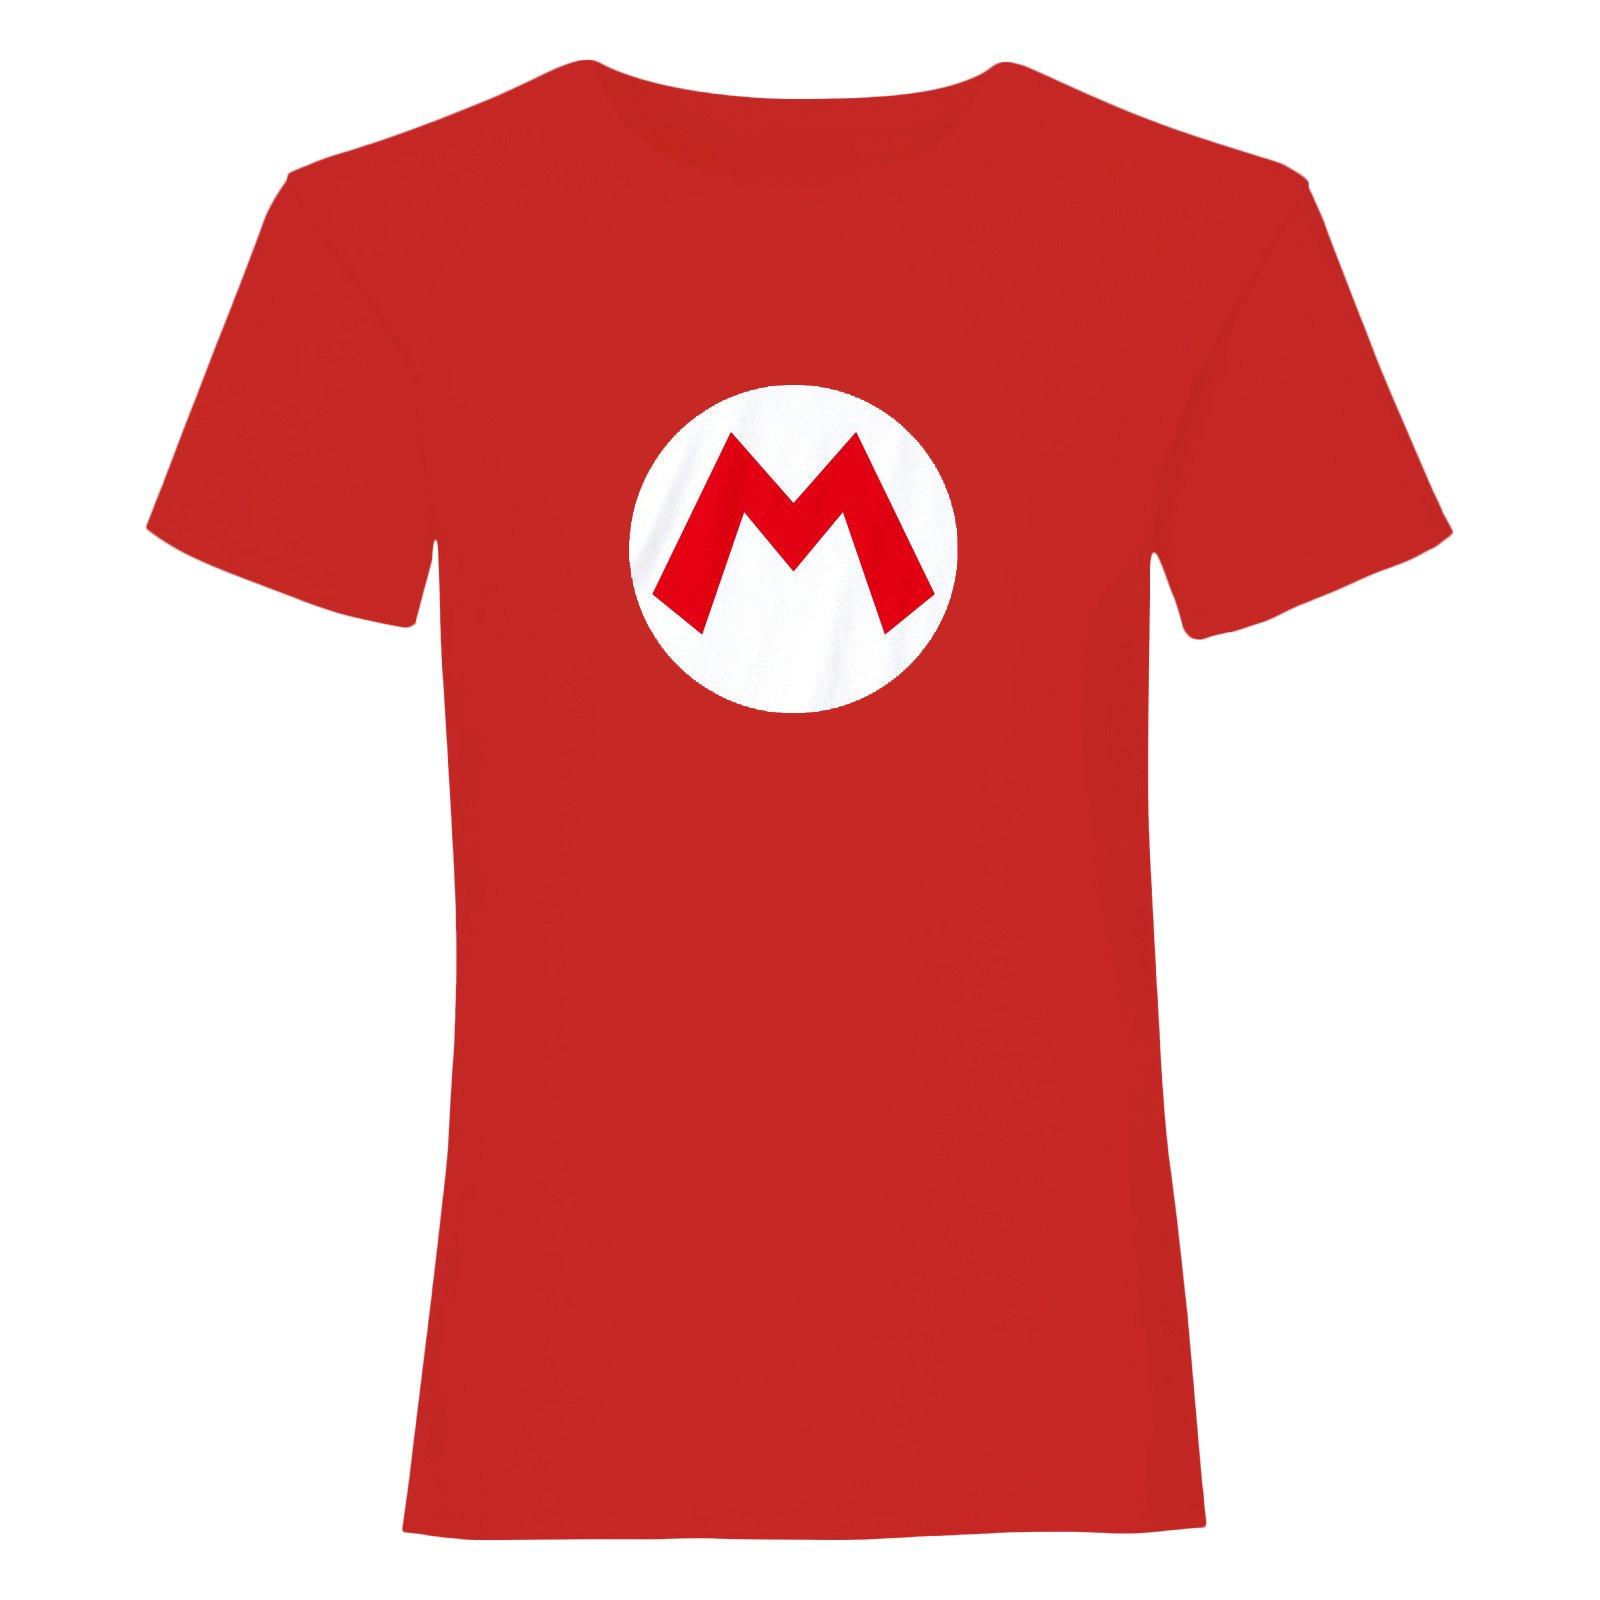 Tshirt Damen Rot Bunt M von Super Mario